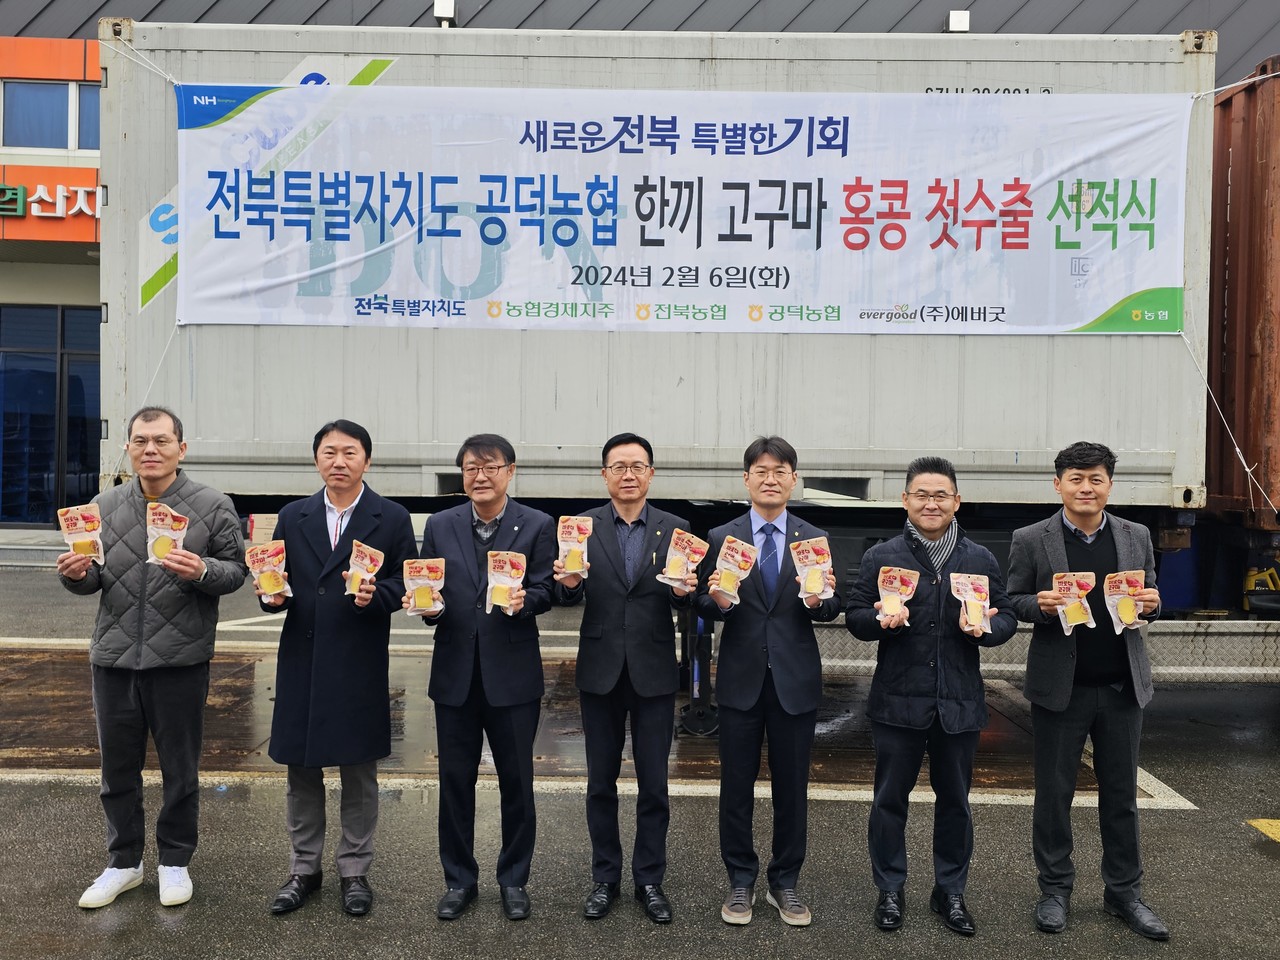 김제 공덕농협(조합장 문용수)의 ‘한 끼 고구마’가 지난 6일 홍콩에 첫 수출됐다.